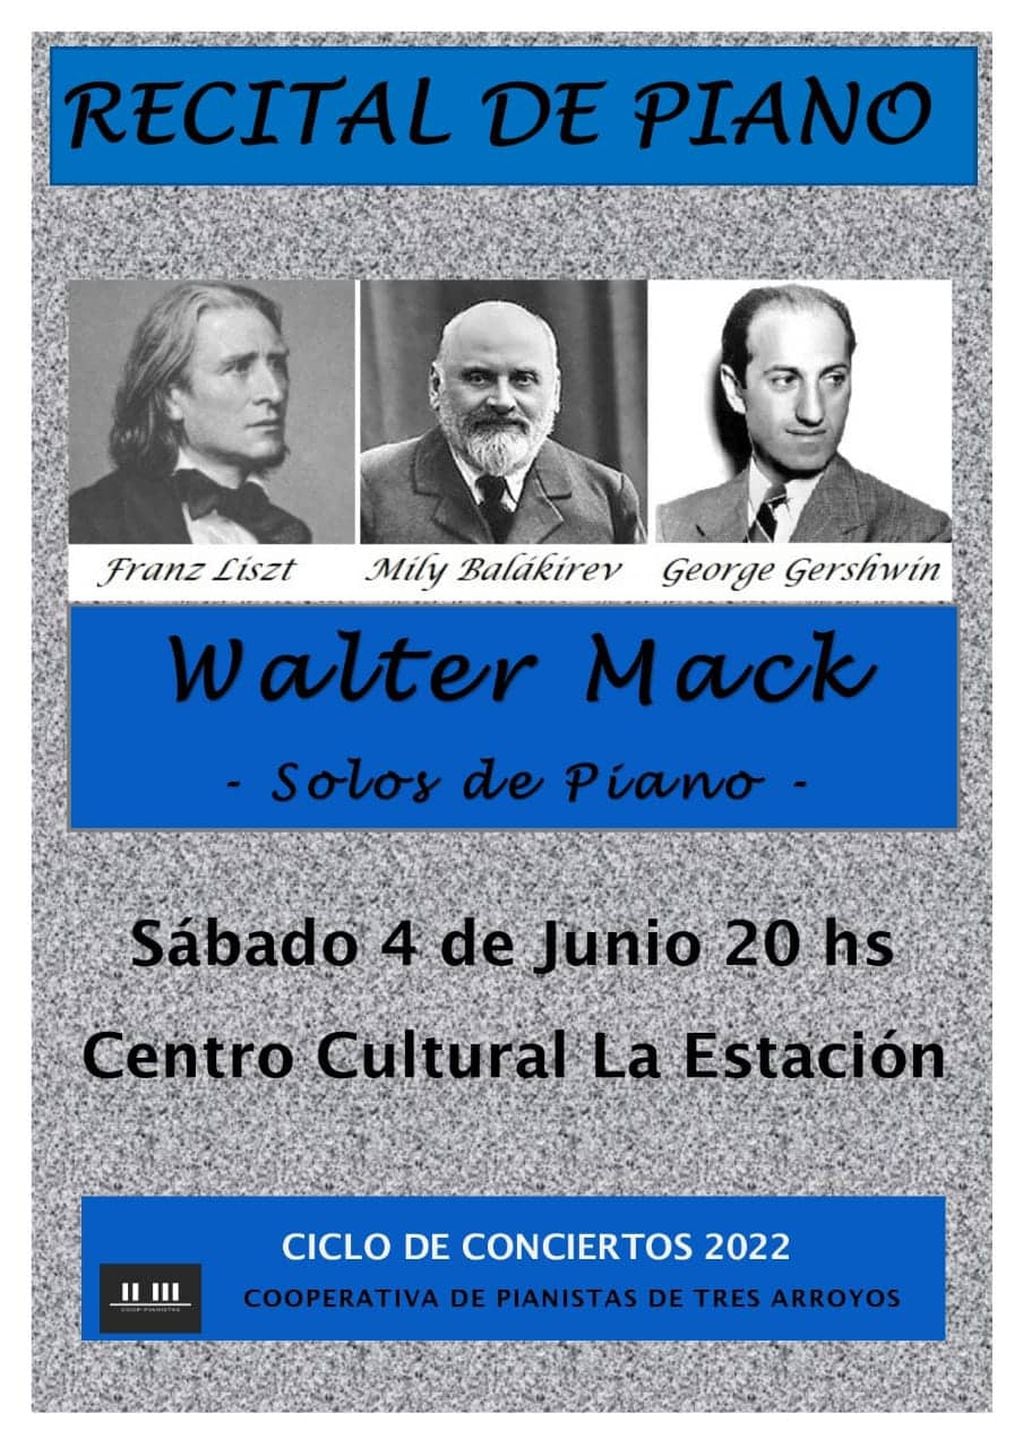 Concierto de Piano de Walter Mack en el Centro Cultural La Estación